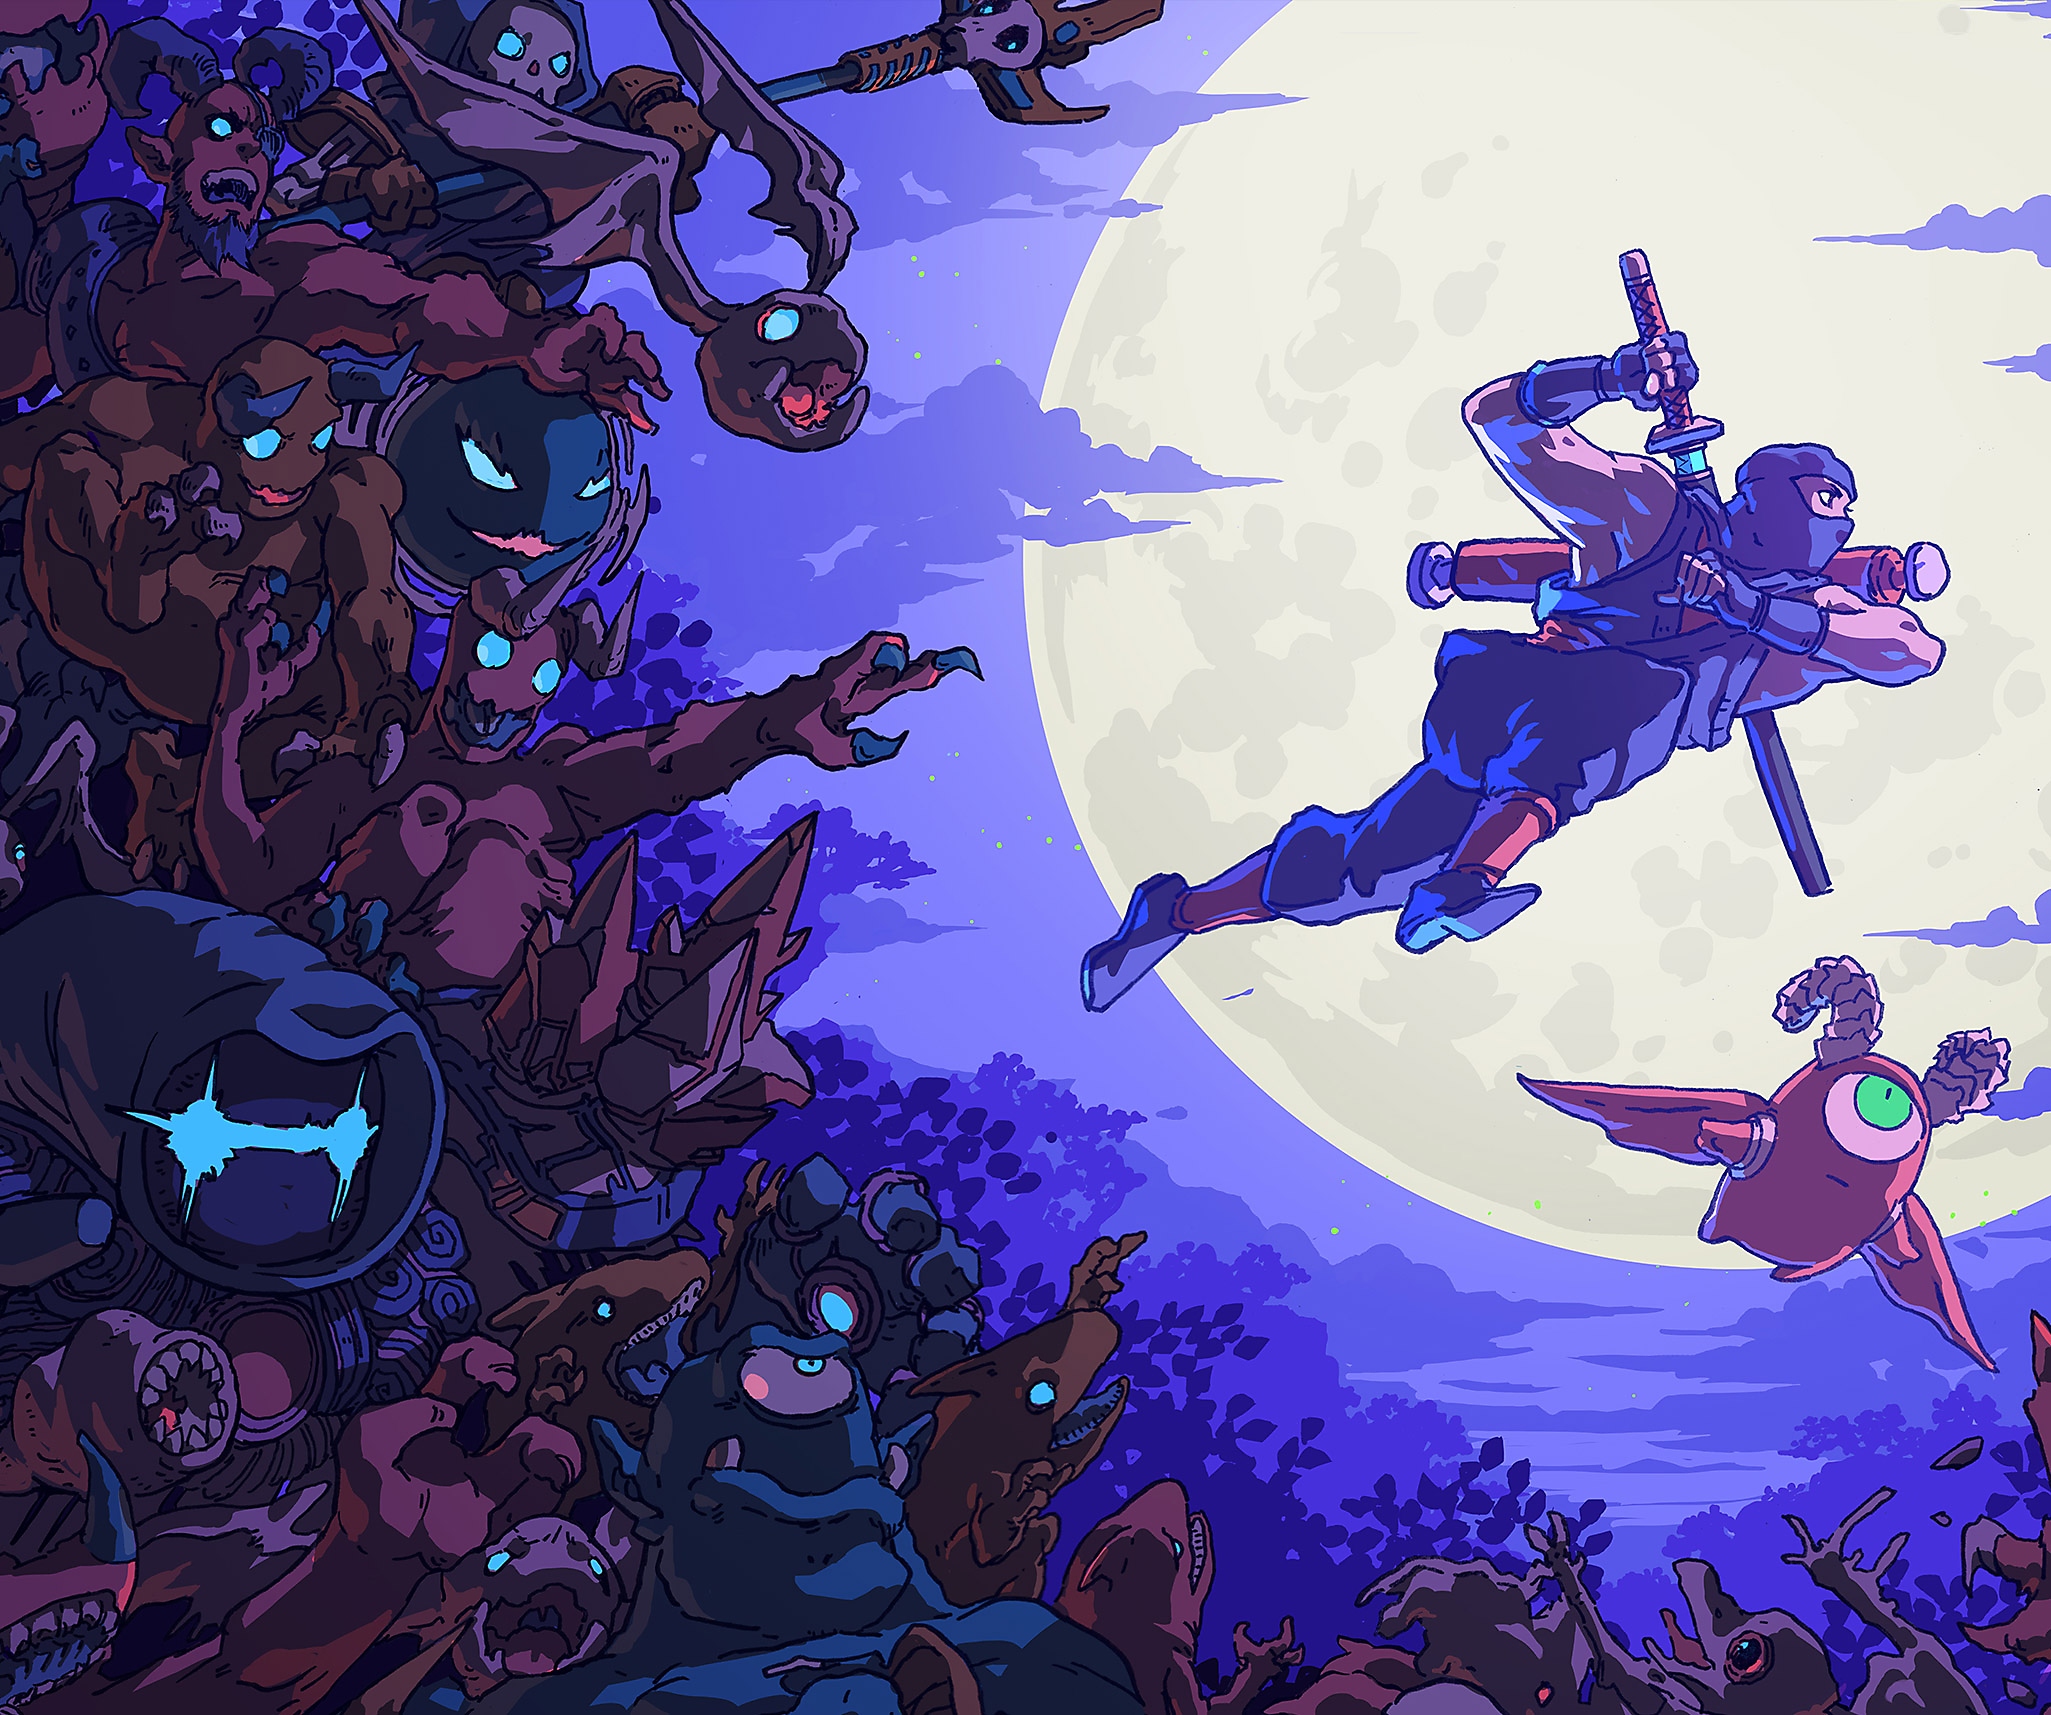 Immagine principale di The Messenger che mostra un disegno realizzato a mano di un ninja che svetta in un cielo illuminato dalla luna.